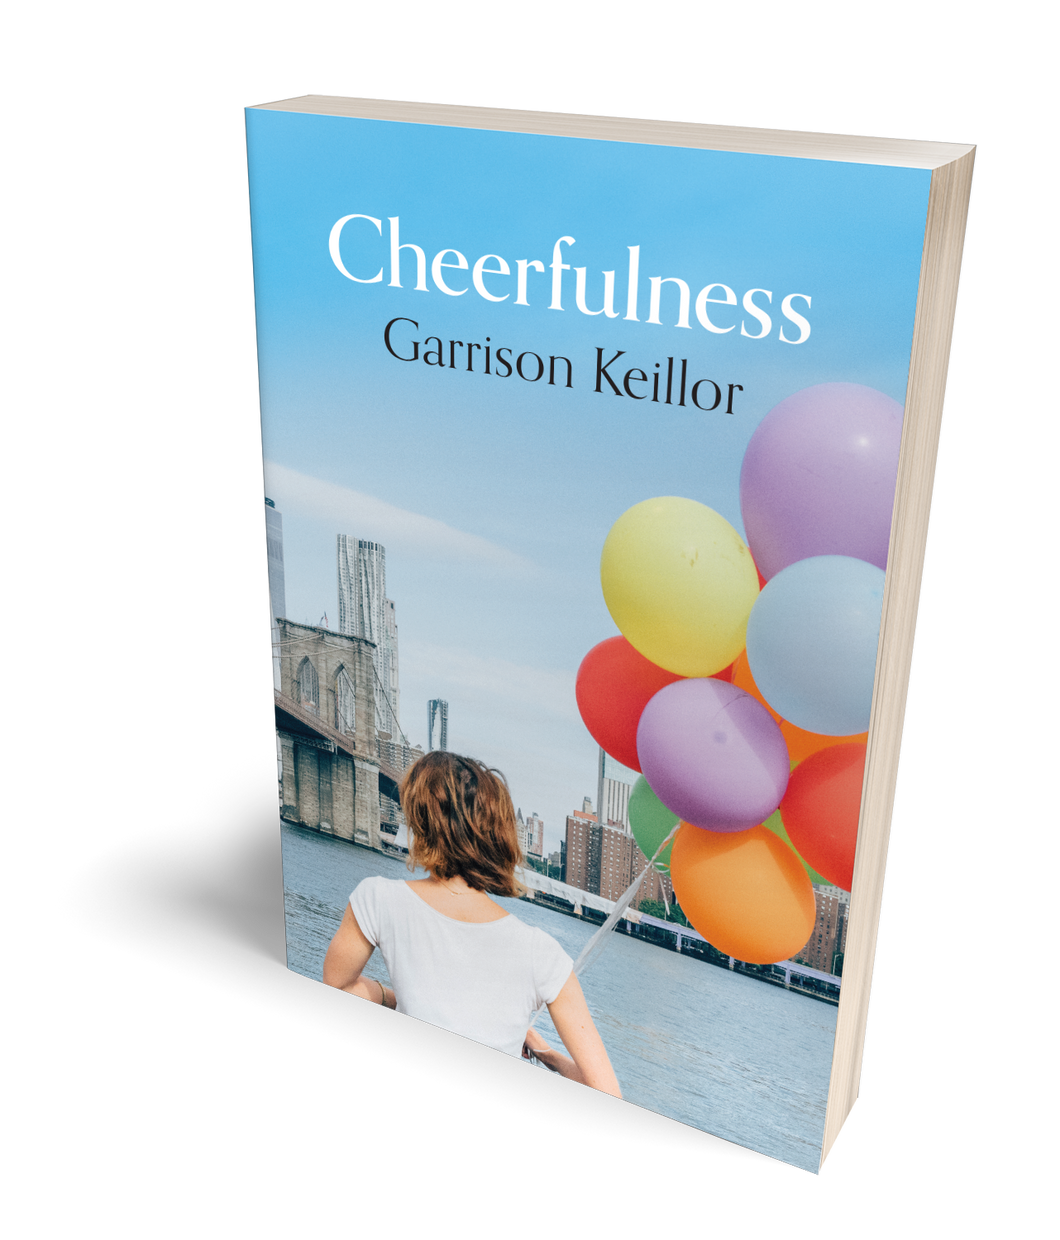 Cheerfulness by Garrison Keillor